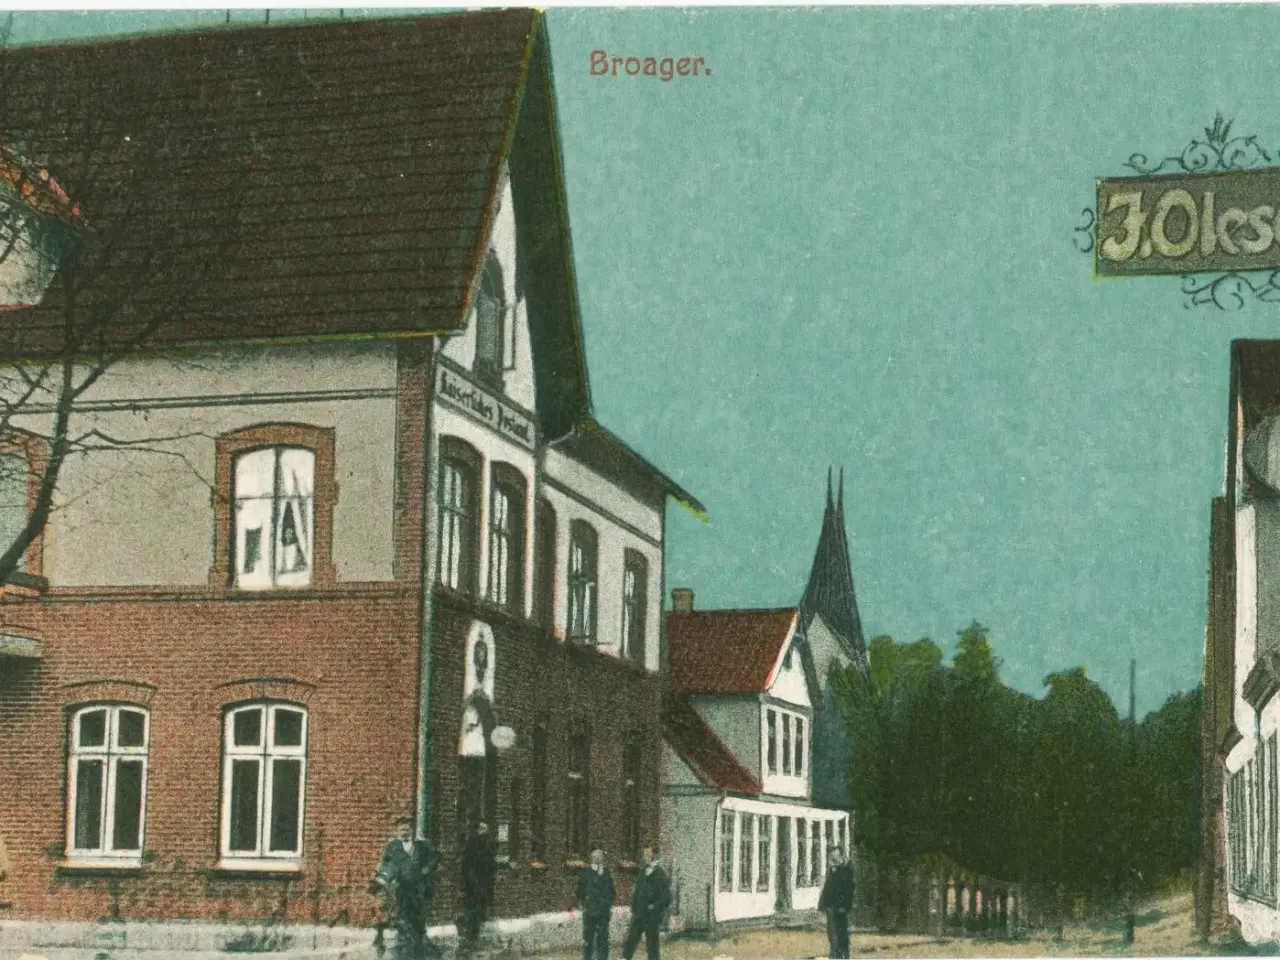 Billede 1 - Broager Posthus før 1920